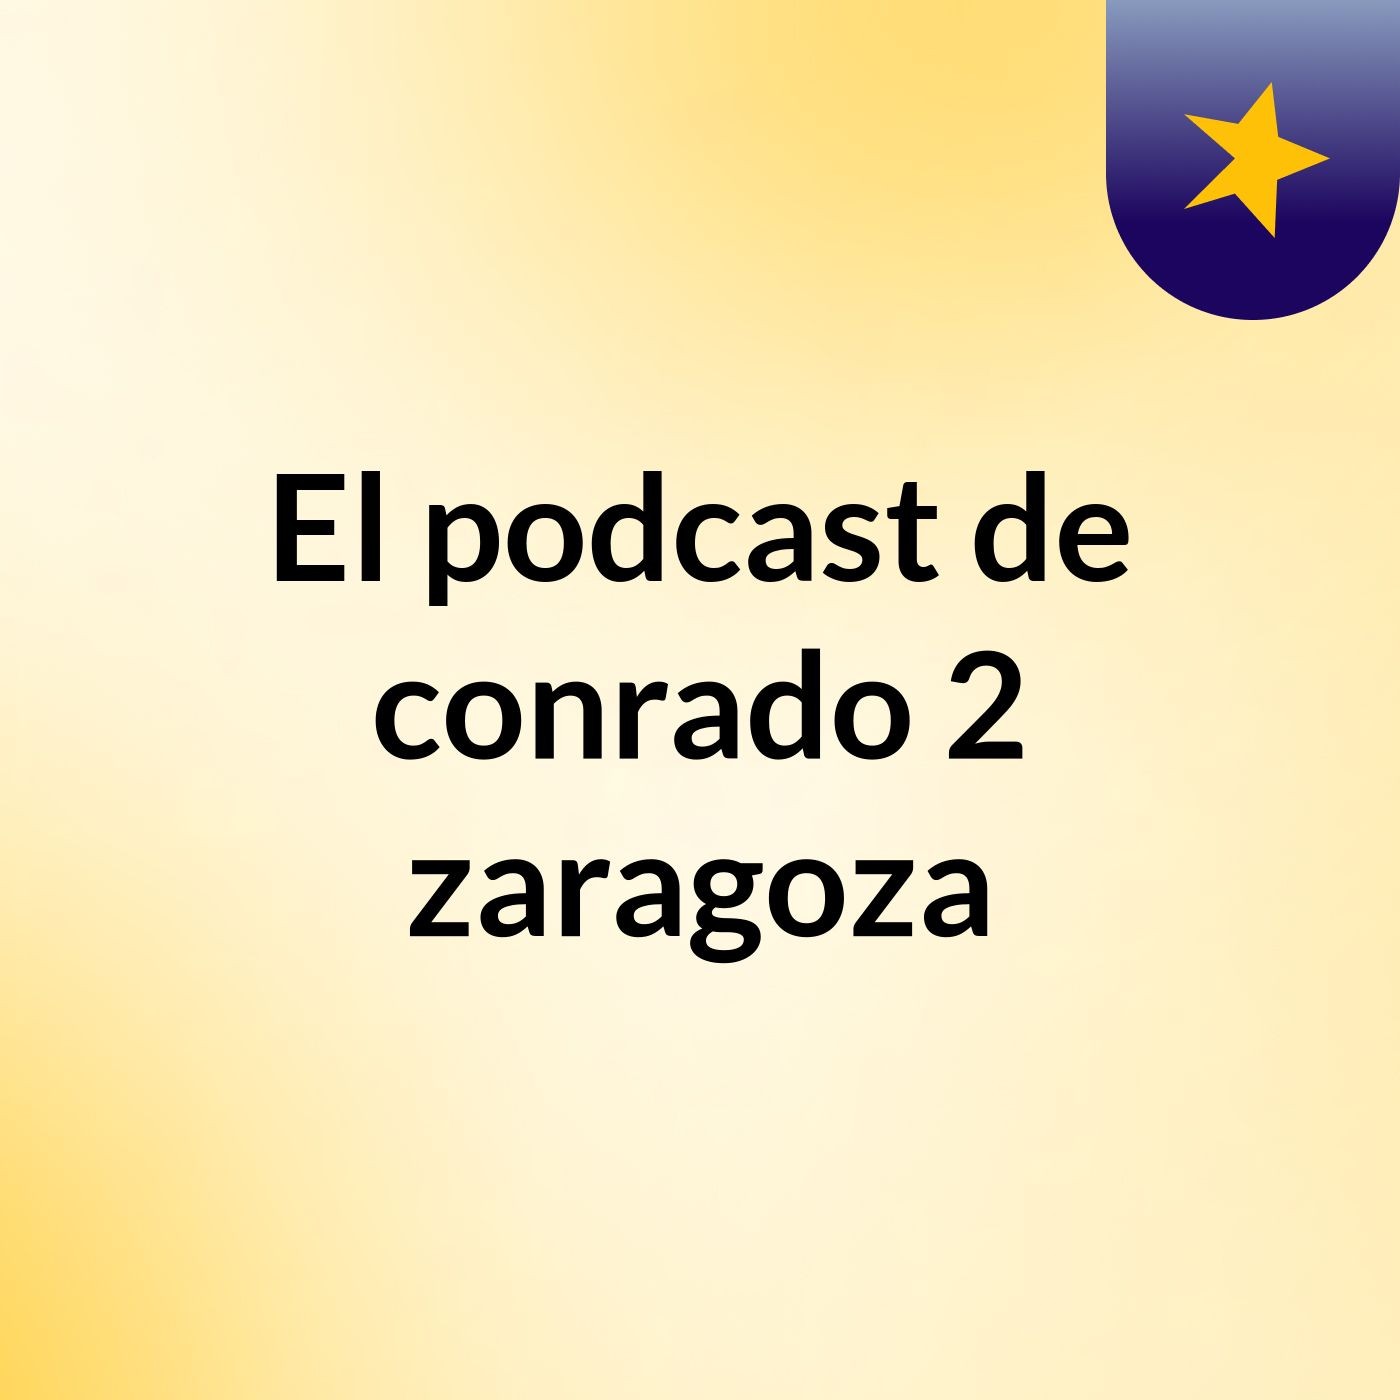 Episodio 6 - El podcast de conrado 2 zaragoza